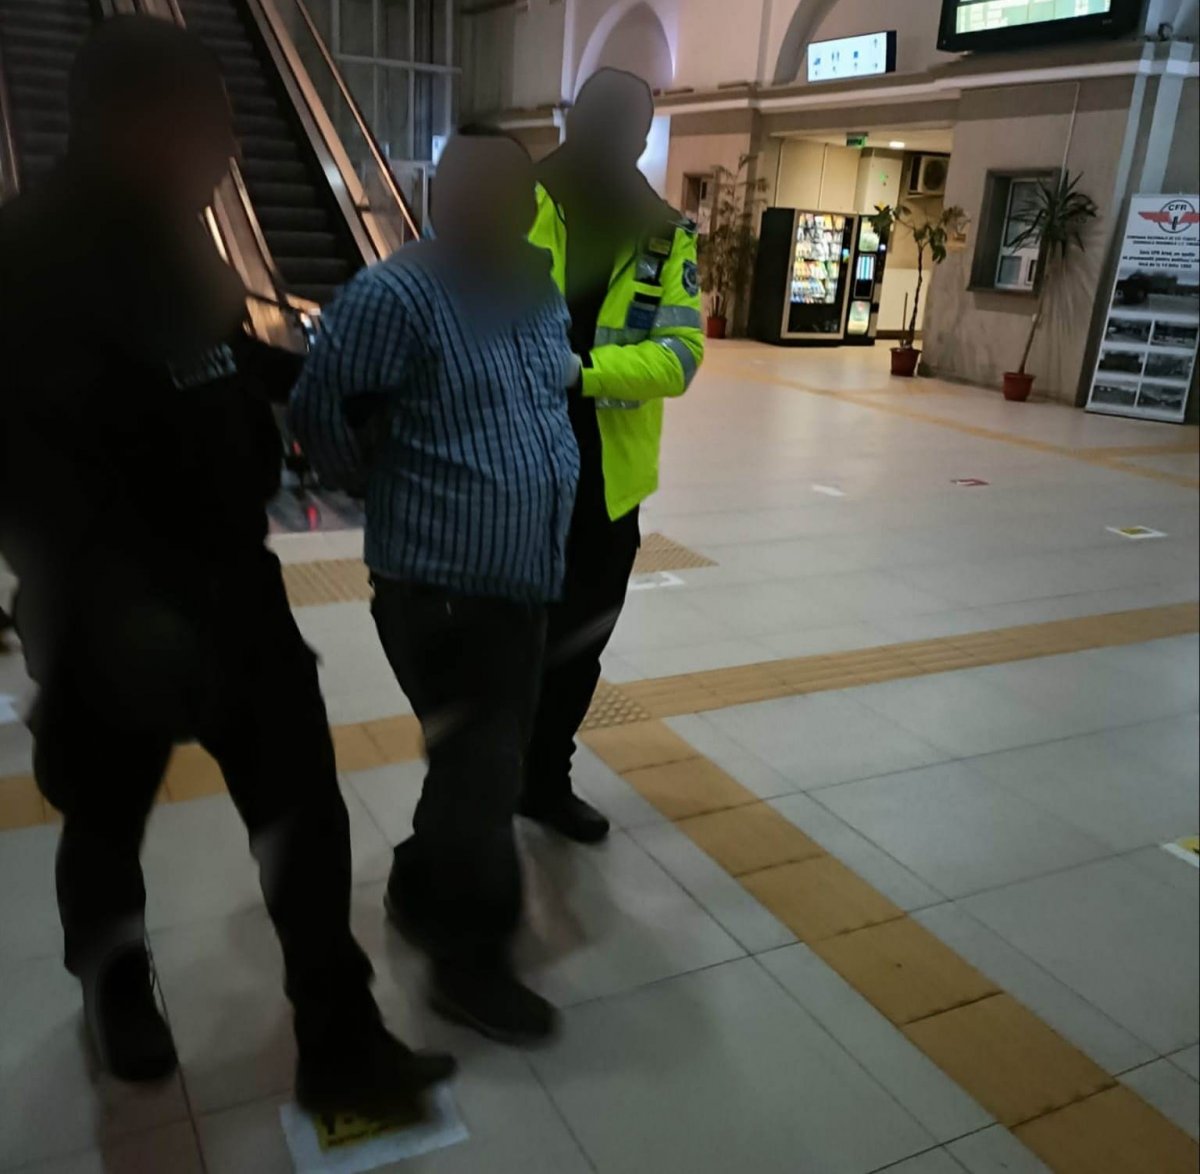 Scandalagiu cu nervii la pământ încătuşat de Poliţia Locală în gară